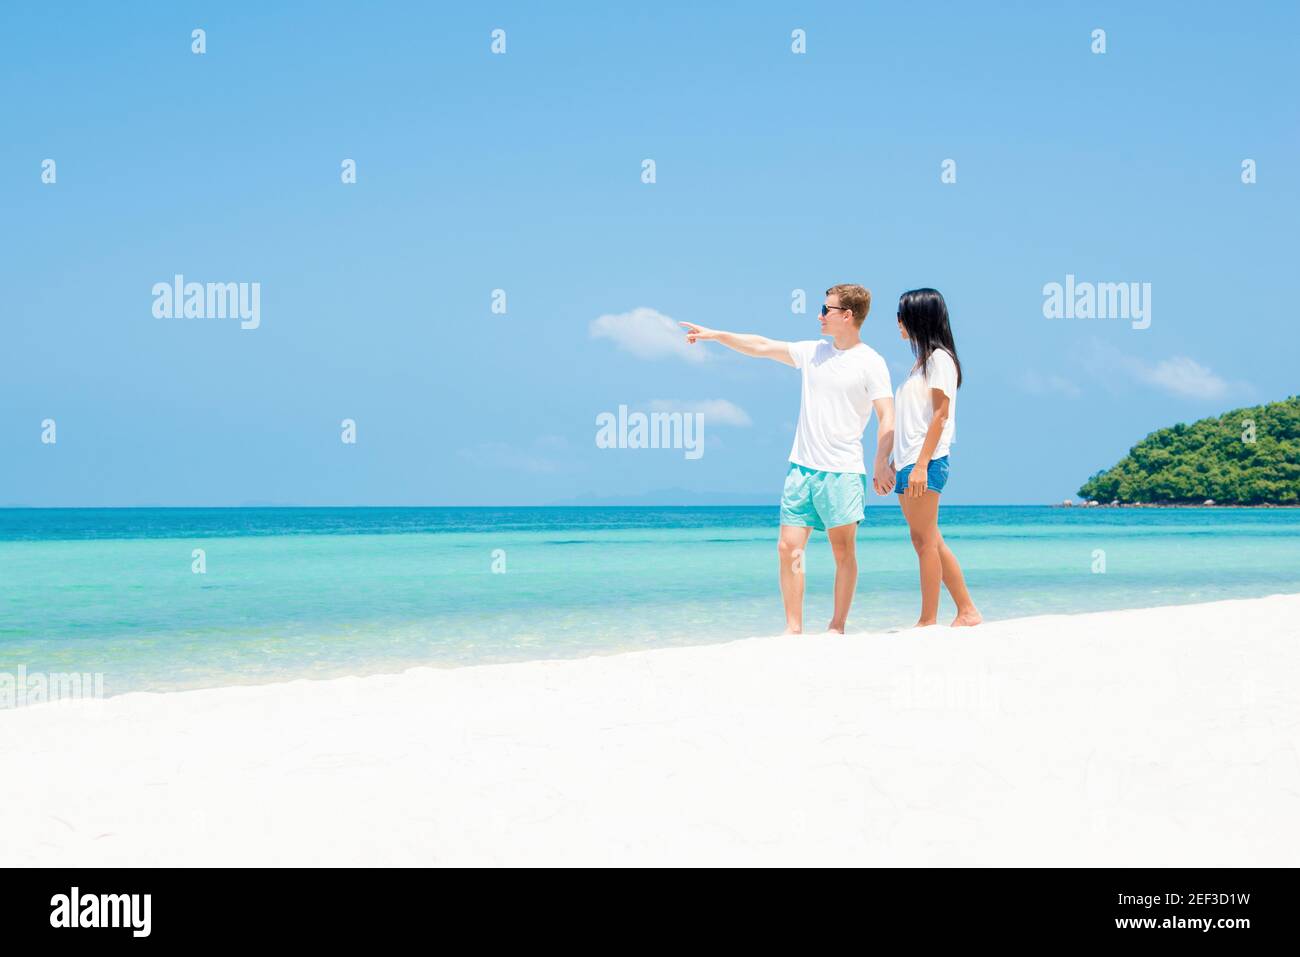 Interracial paar am schönen Strand im Sommer - Urlaub und Touristische Konzepte Stockfoto